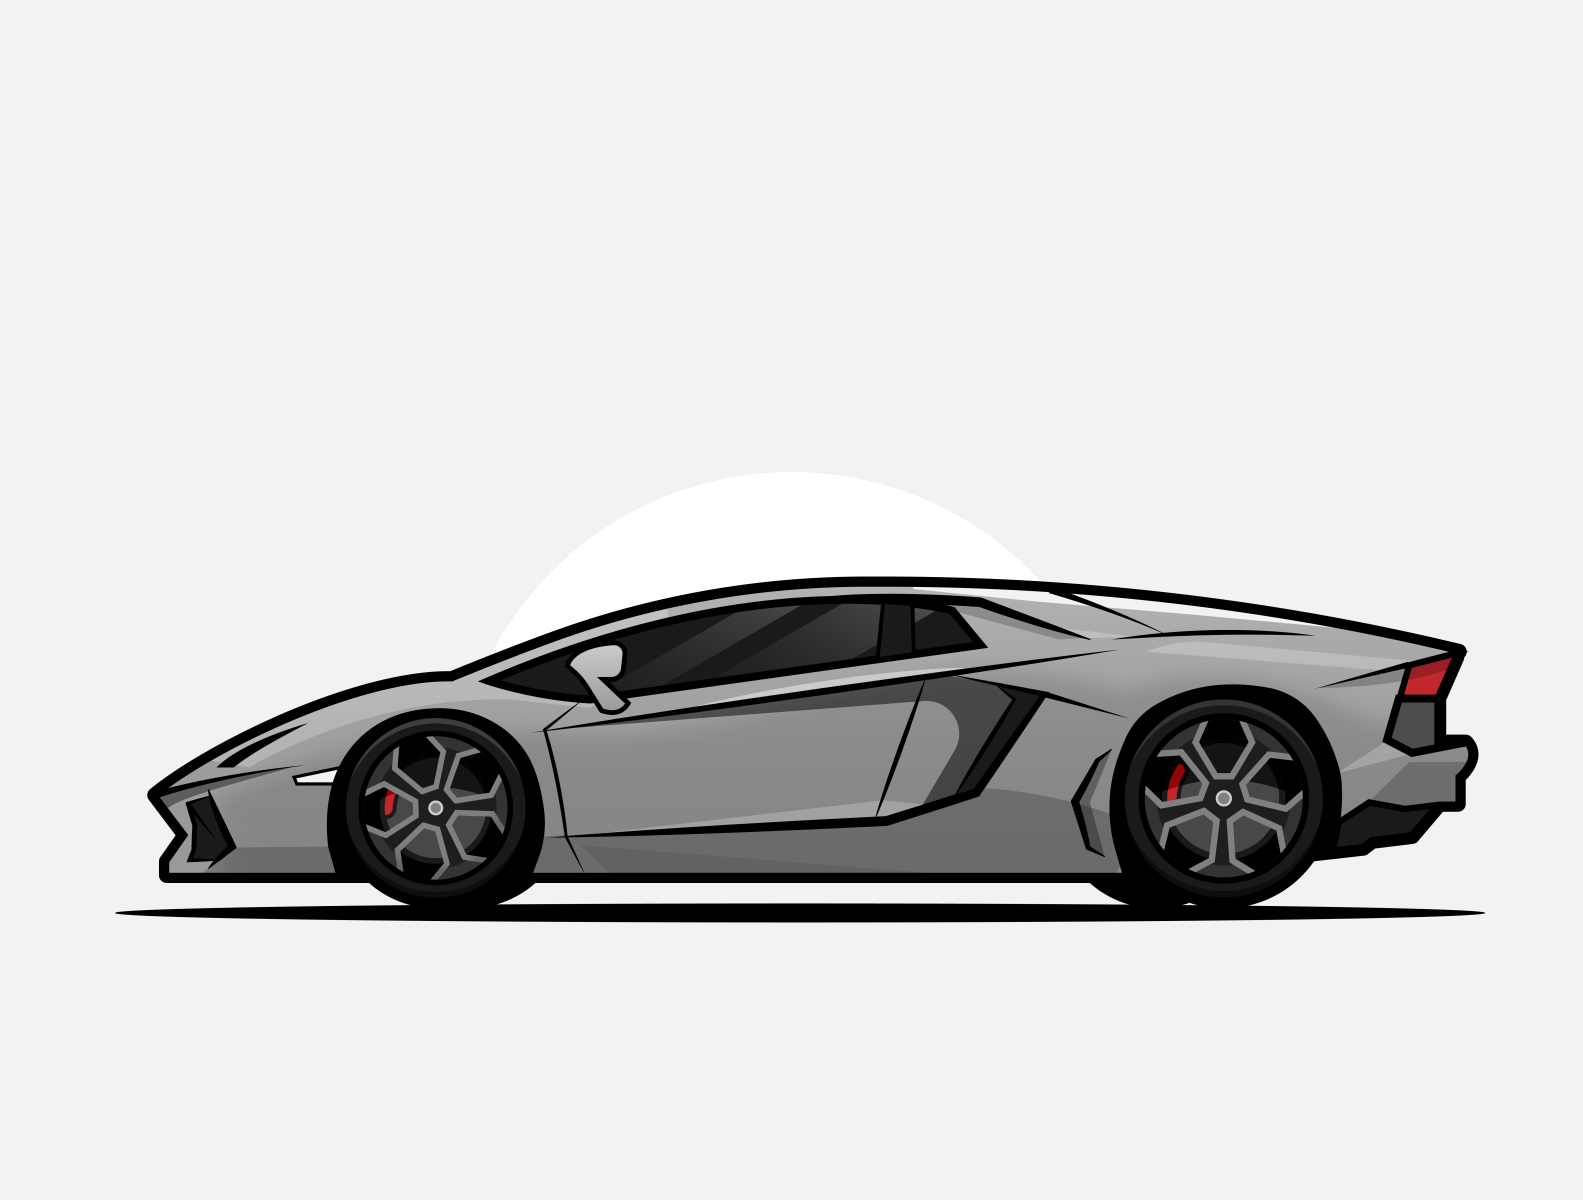 Lamborghini illustration by Mohitbadwaik on Dribbble